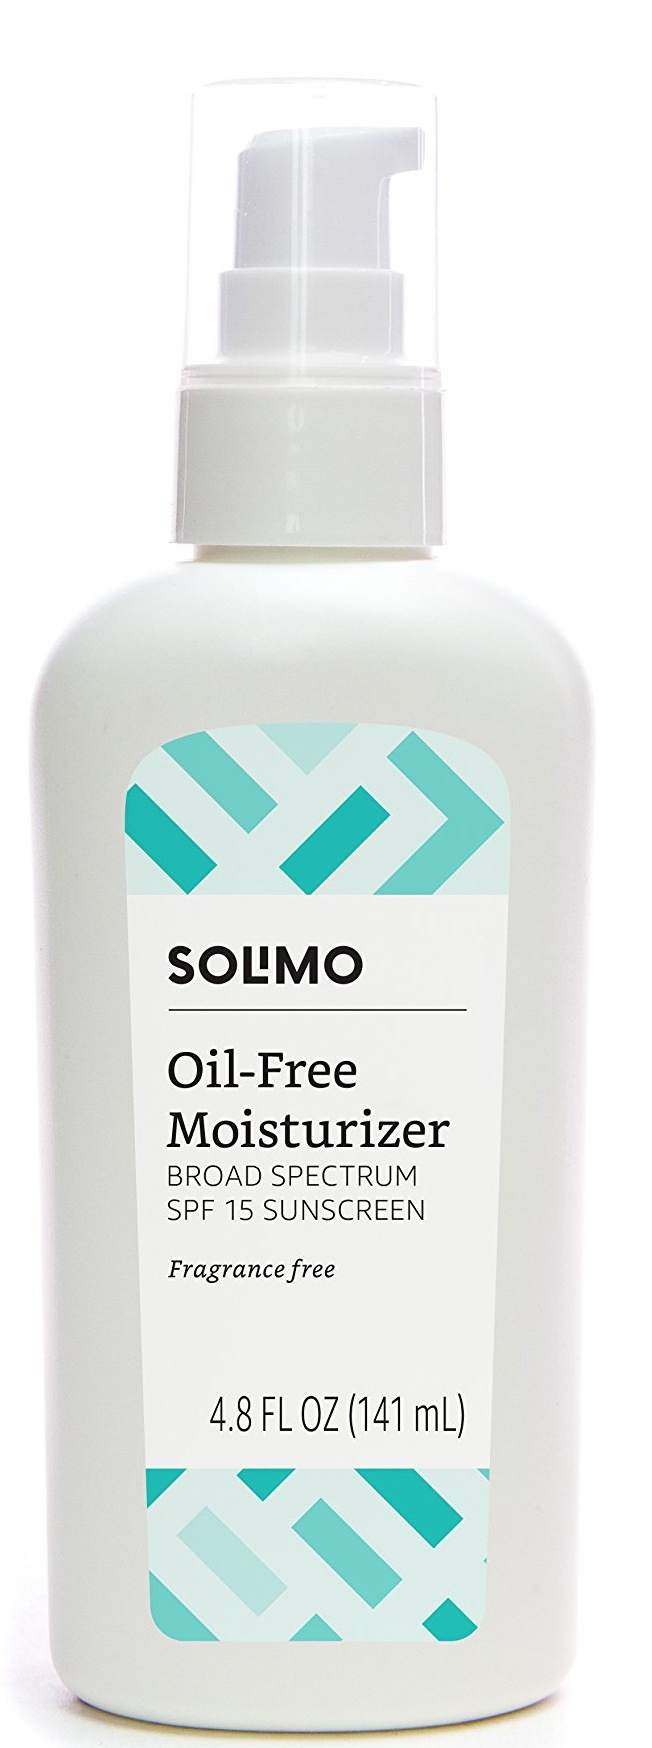 Amazon Brand Solimo Oil-Free Moisturizer